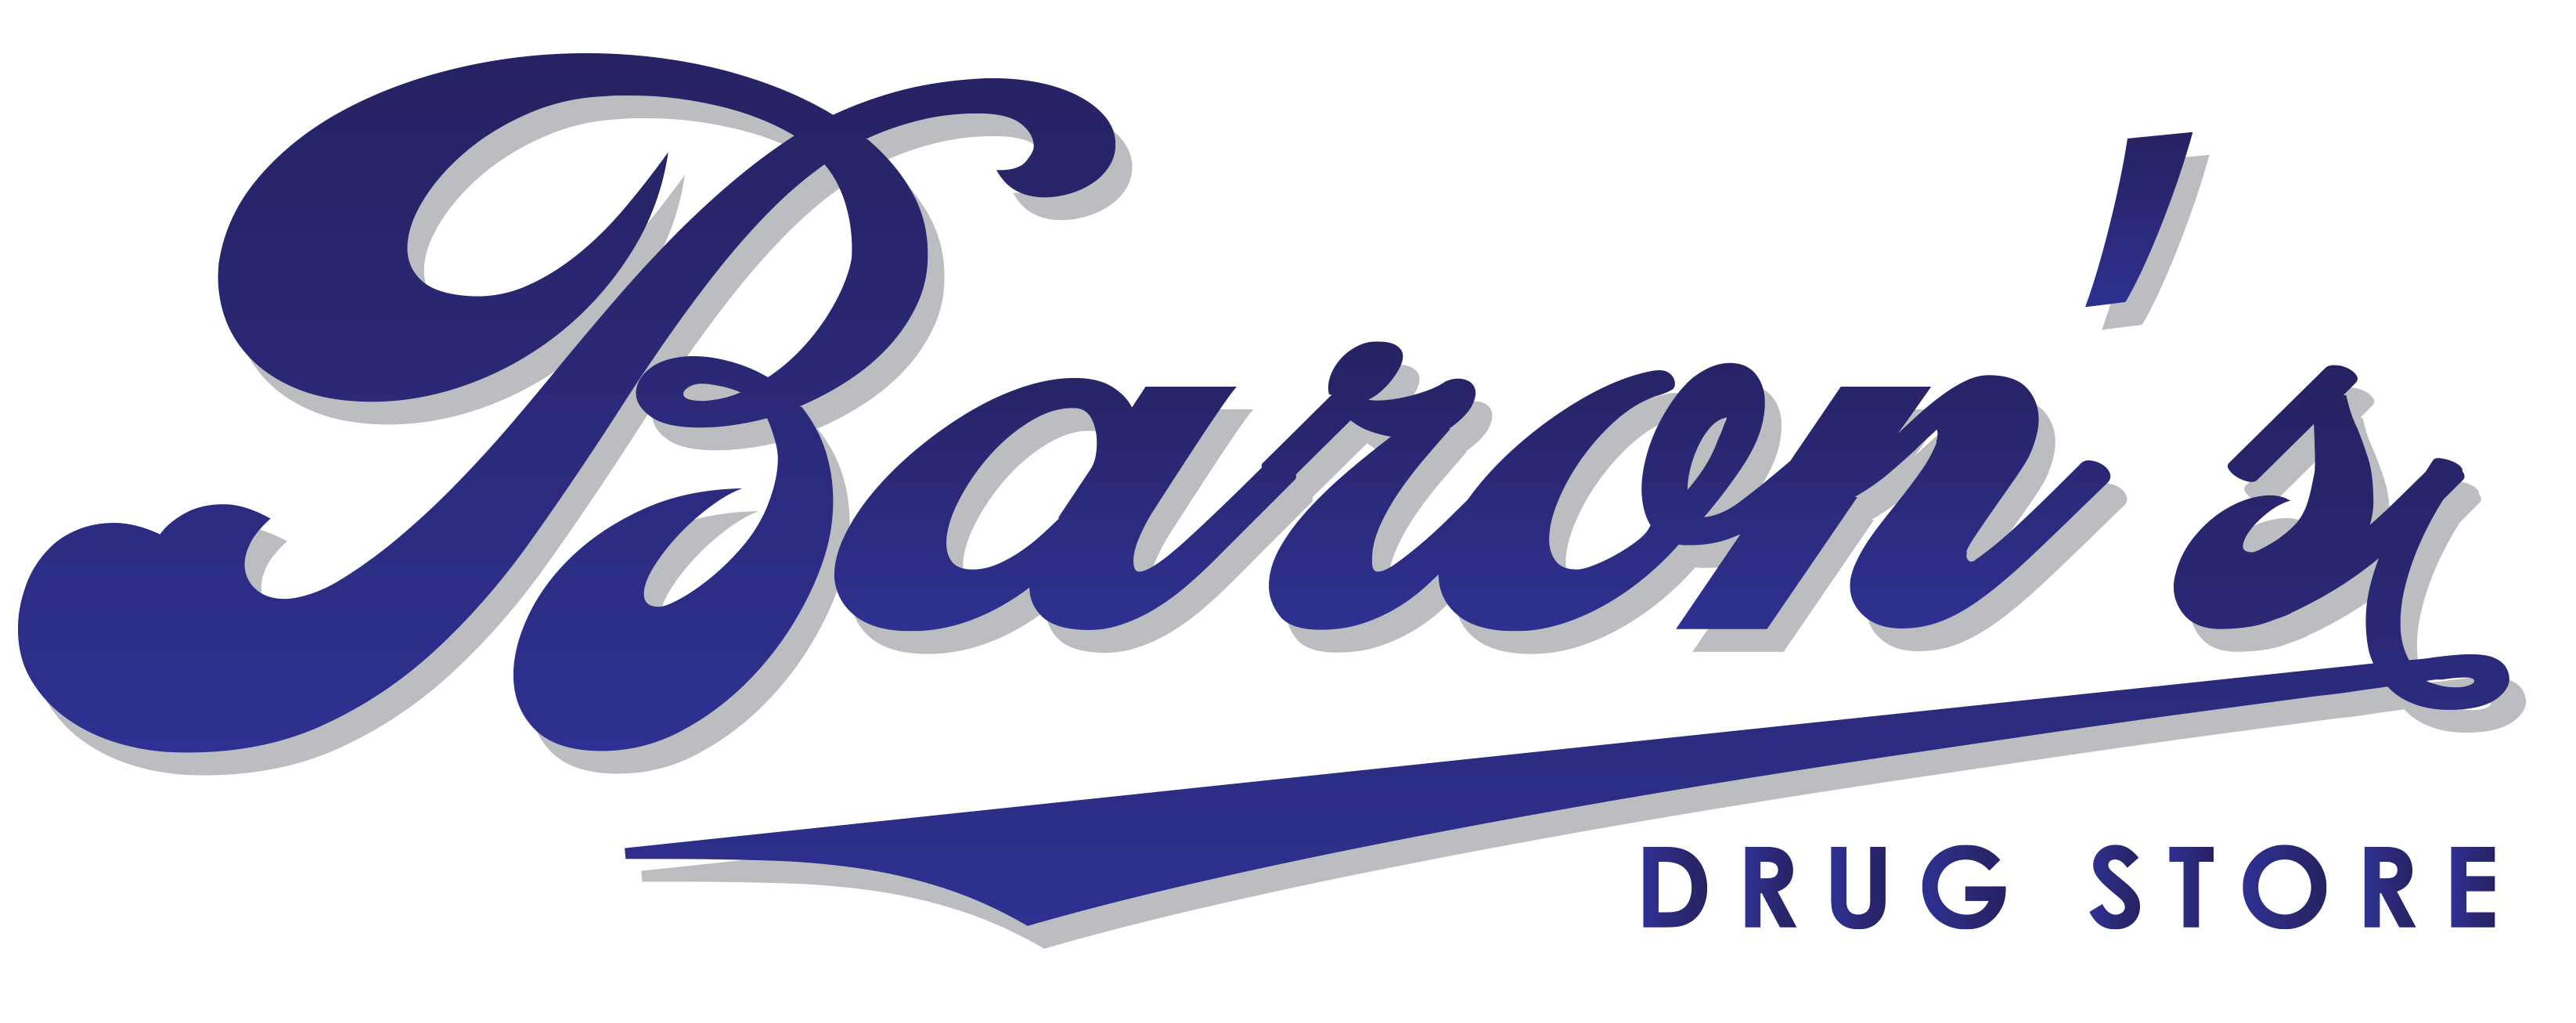 Baron's Drug Store